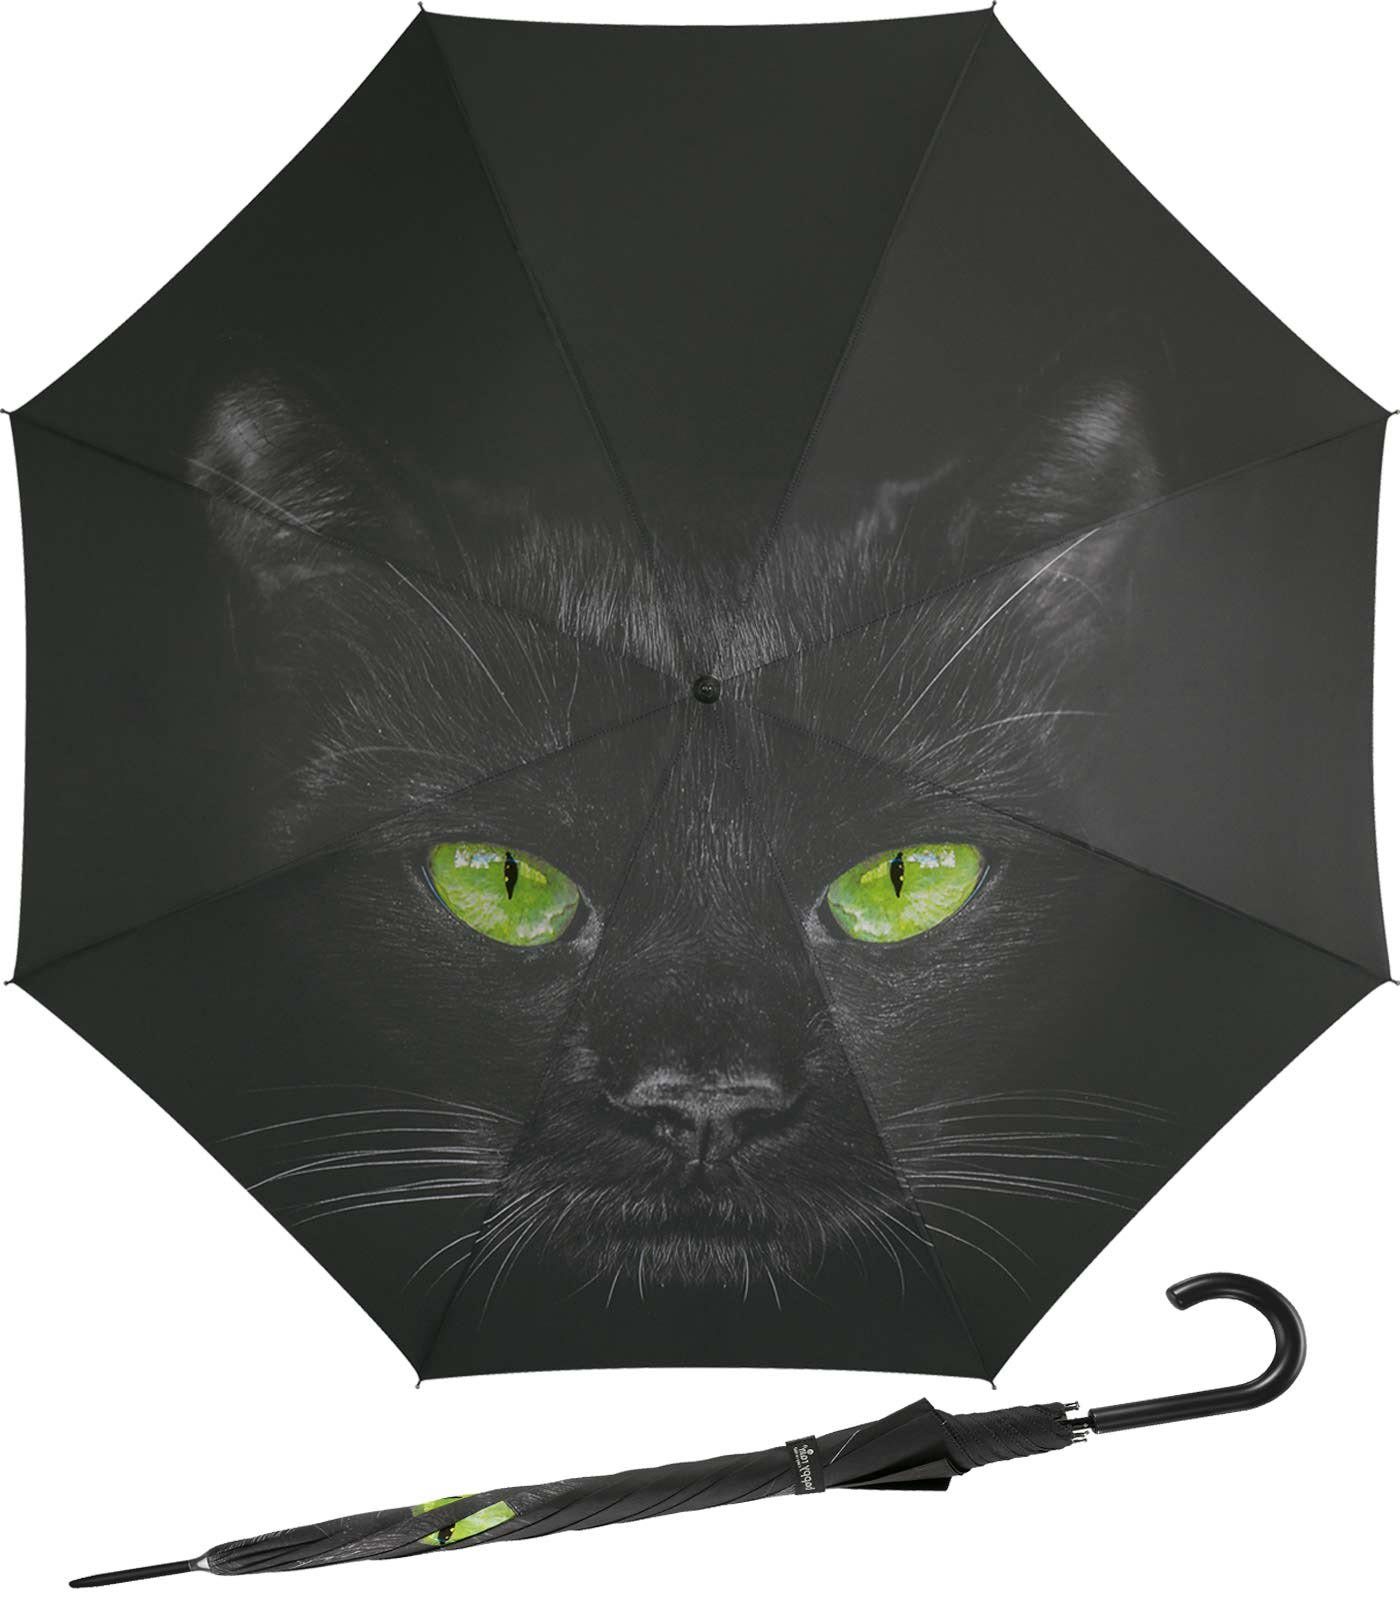 HAPPY RAIN Langregenschirm großer Damen-Regenschirm mit Auf-Automatik, der unergründliche Blick einer schwarzen Katze